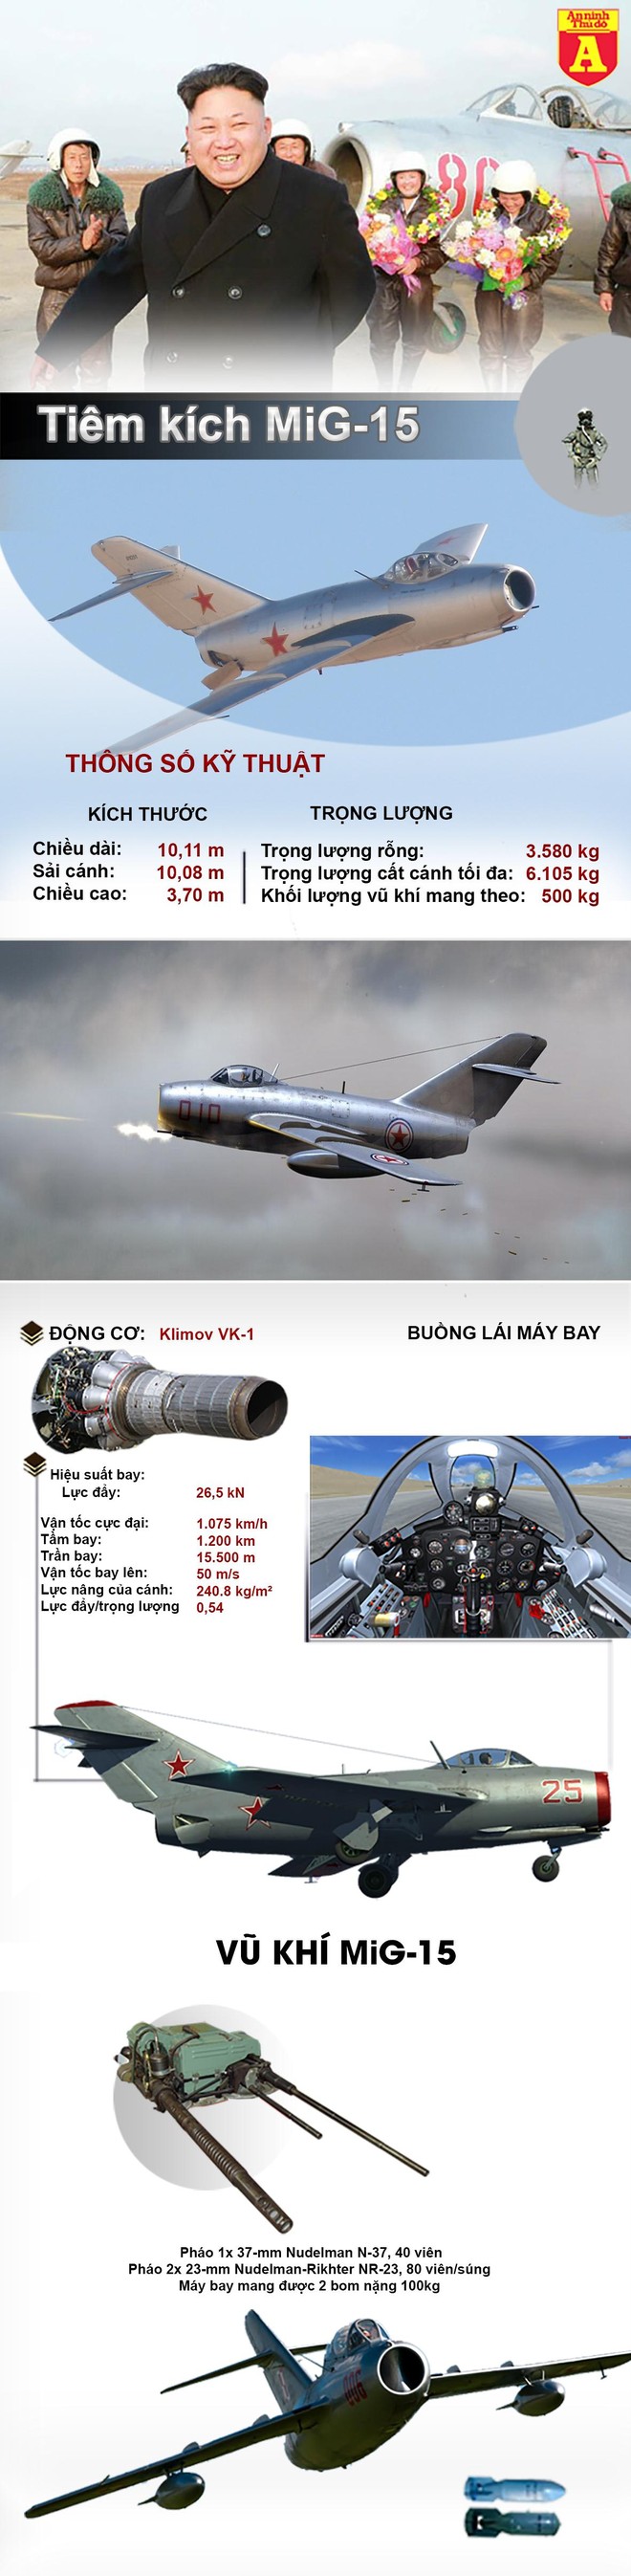 [Info] Bất ngờ phi đội 34 chiếc MiG-15 của Triều Tiên vẫn đang hoạt động sau 70 năm ra đời ảnh 2